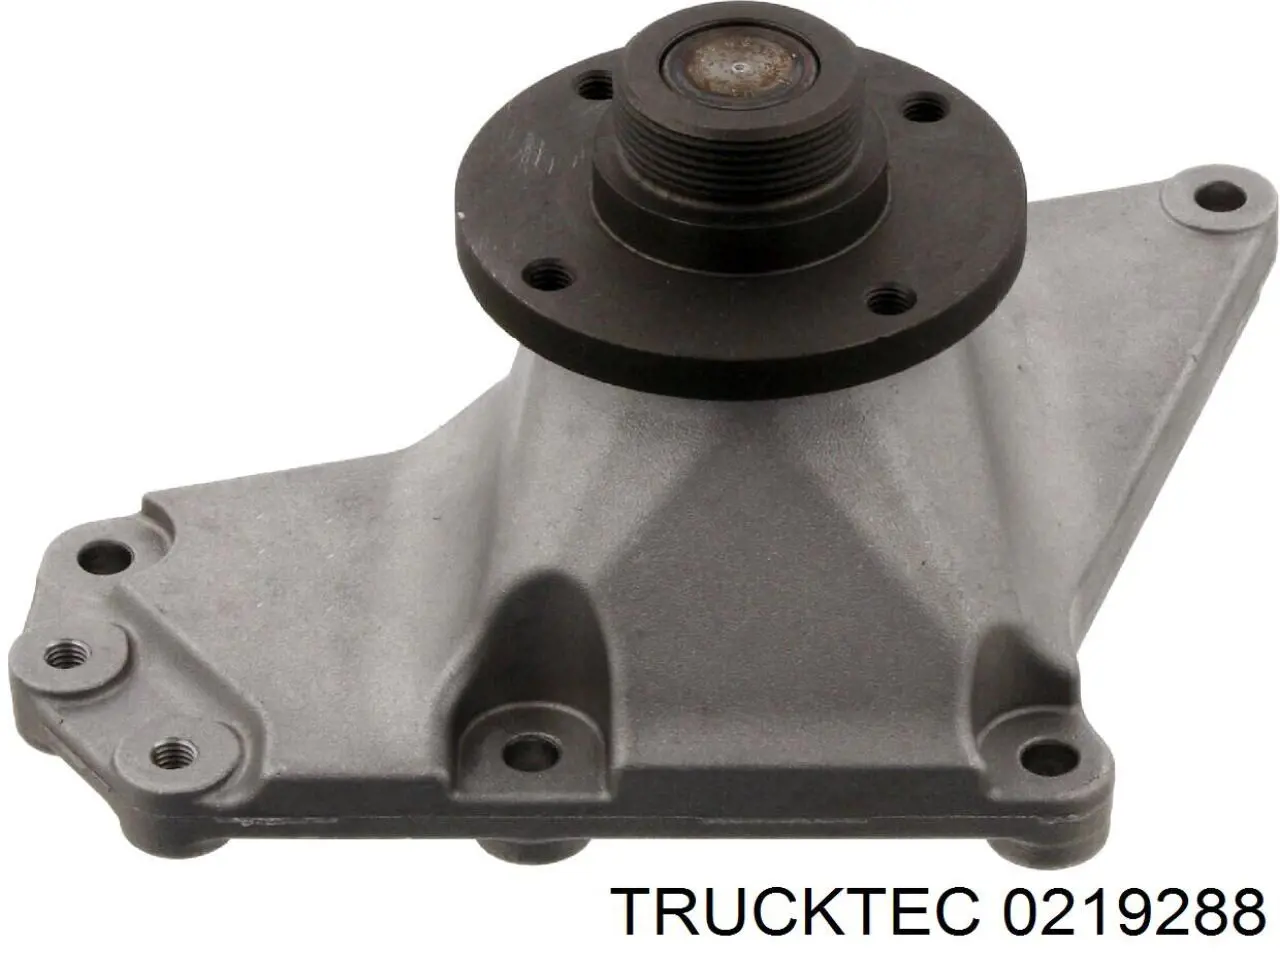 02.19.288 Trucktec soporte para acoplamiento viscoso